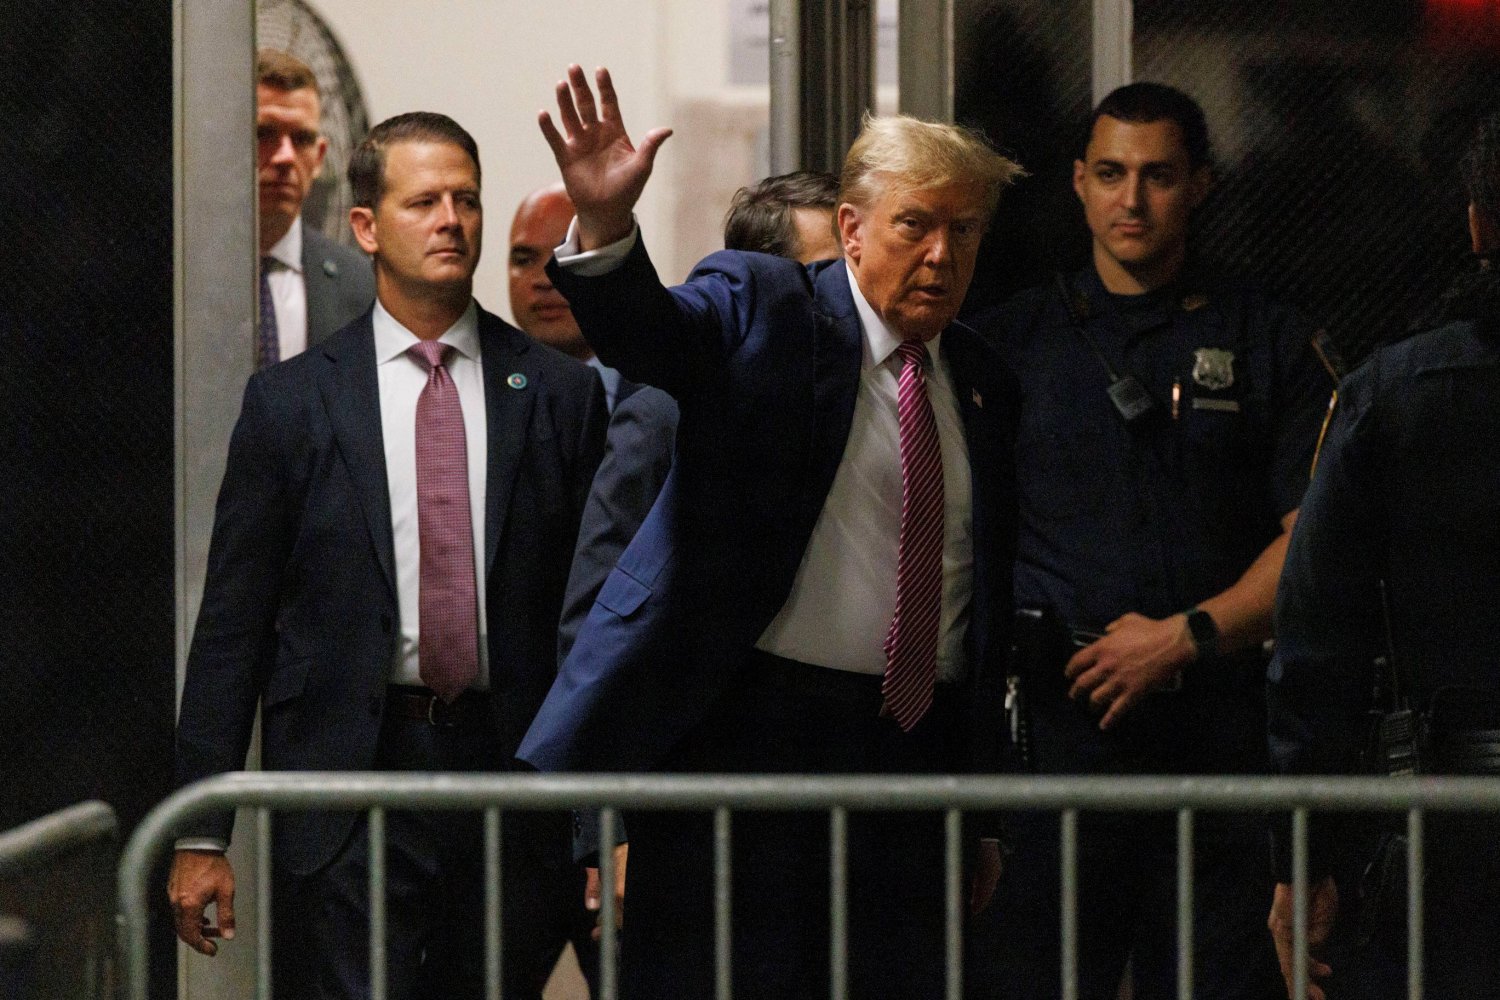 الرئيس الأميركي السابق والمرشح الجمهوري دونالد ترمب يلوح بيده للصحافيين قبيل حضور محاكمته في نيويورك (رويترز)